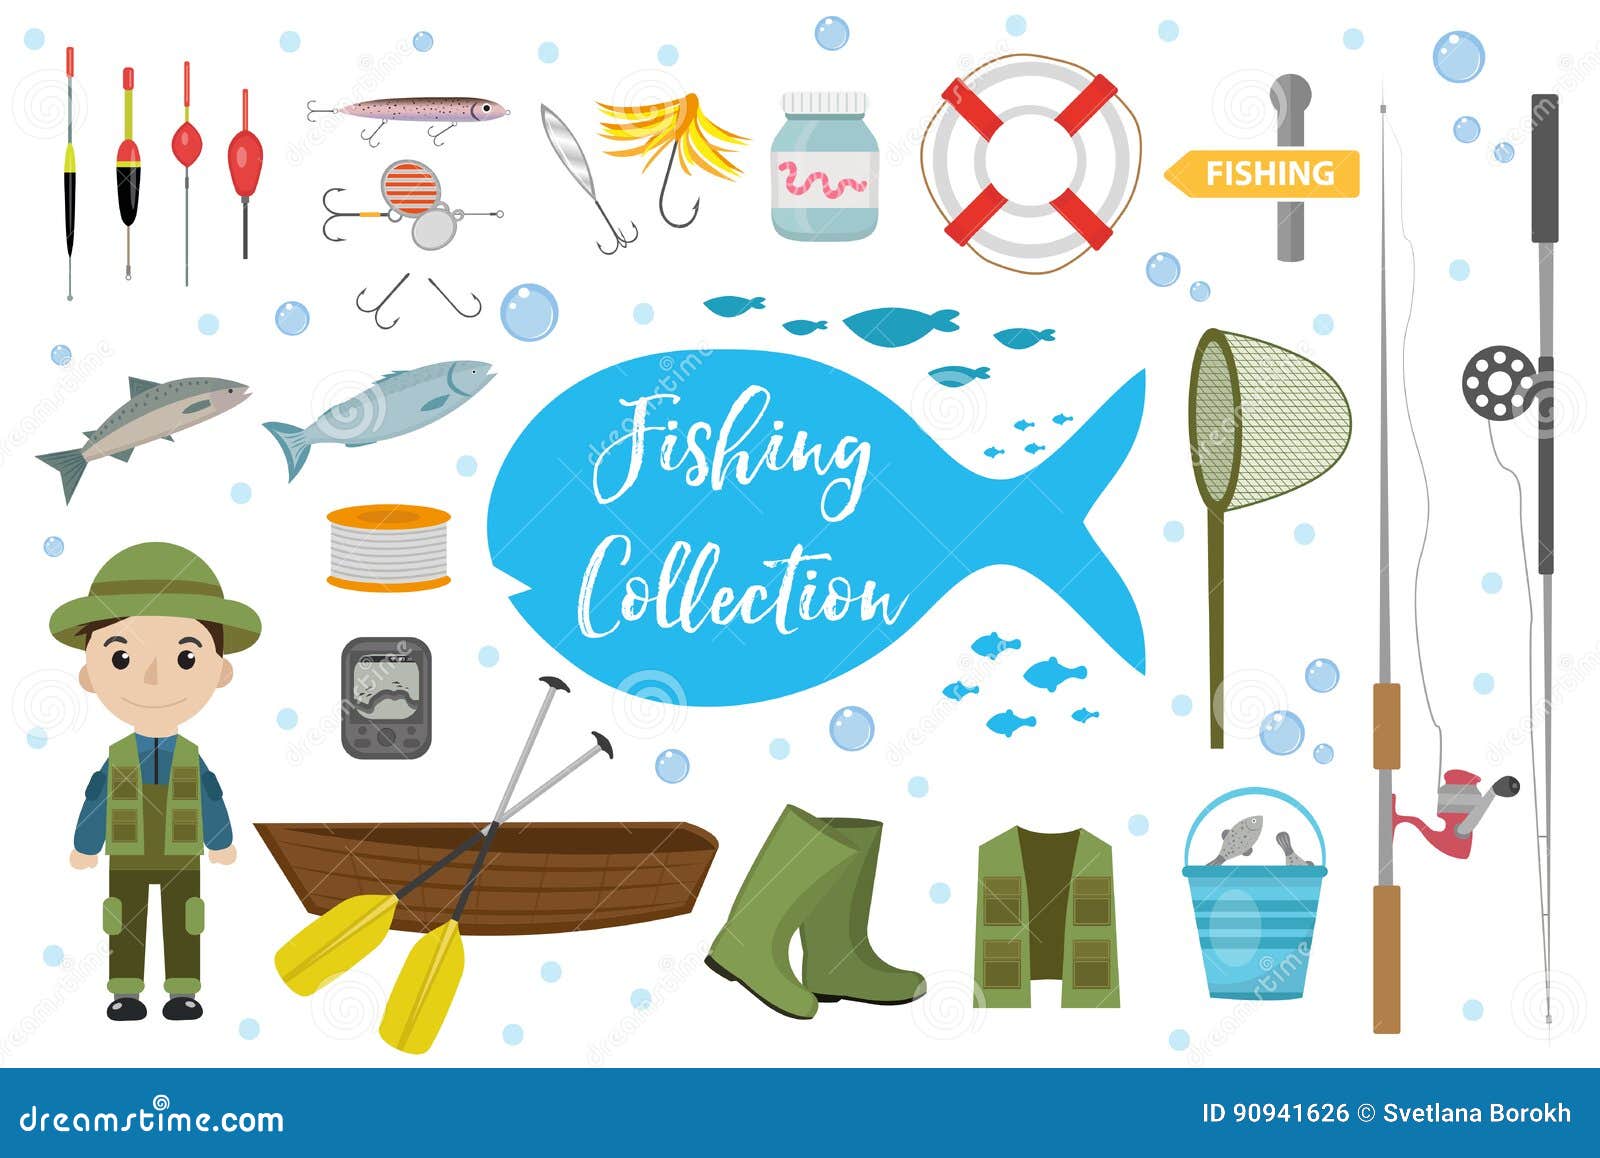 Fishing Tools Stock Illustrations – 2,356 Fishing Tools Stock Illustrations,  Vectors & Clipart - Dreamstime